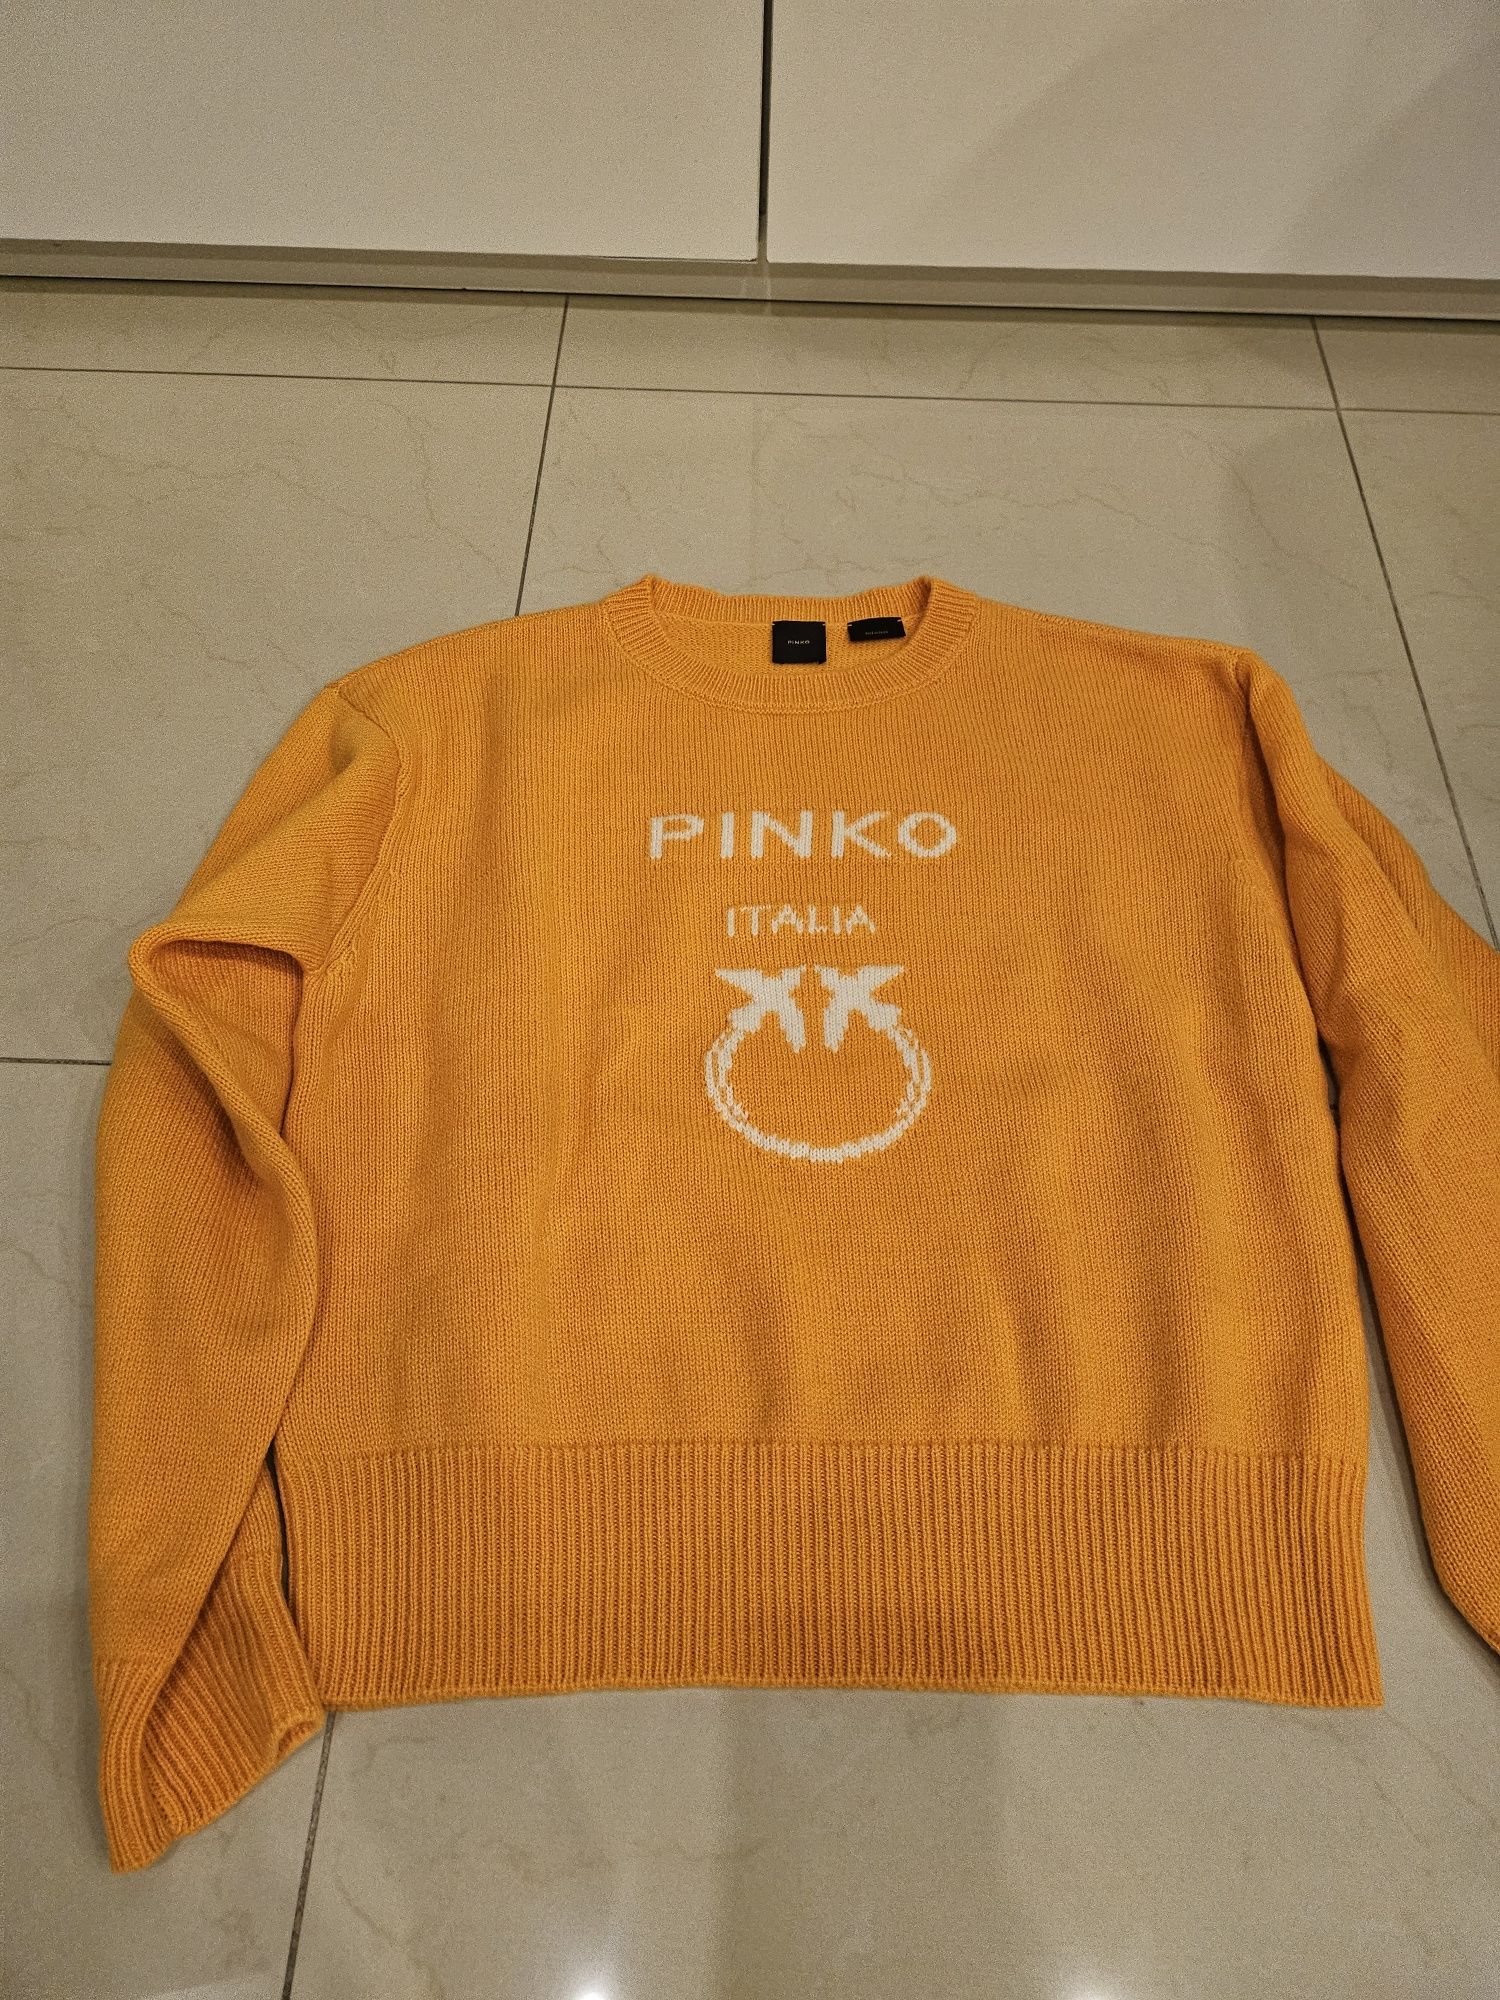 Swetry Pinko pomaranczowy i limonka